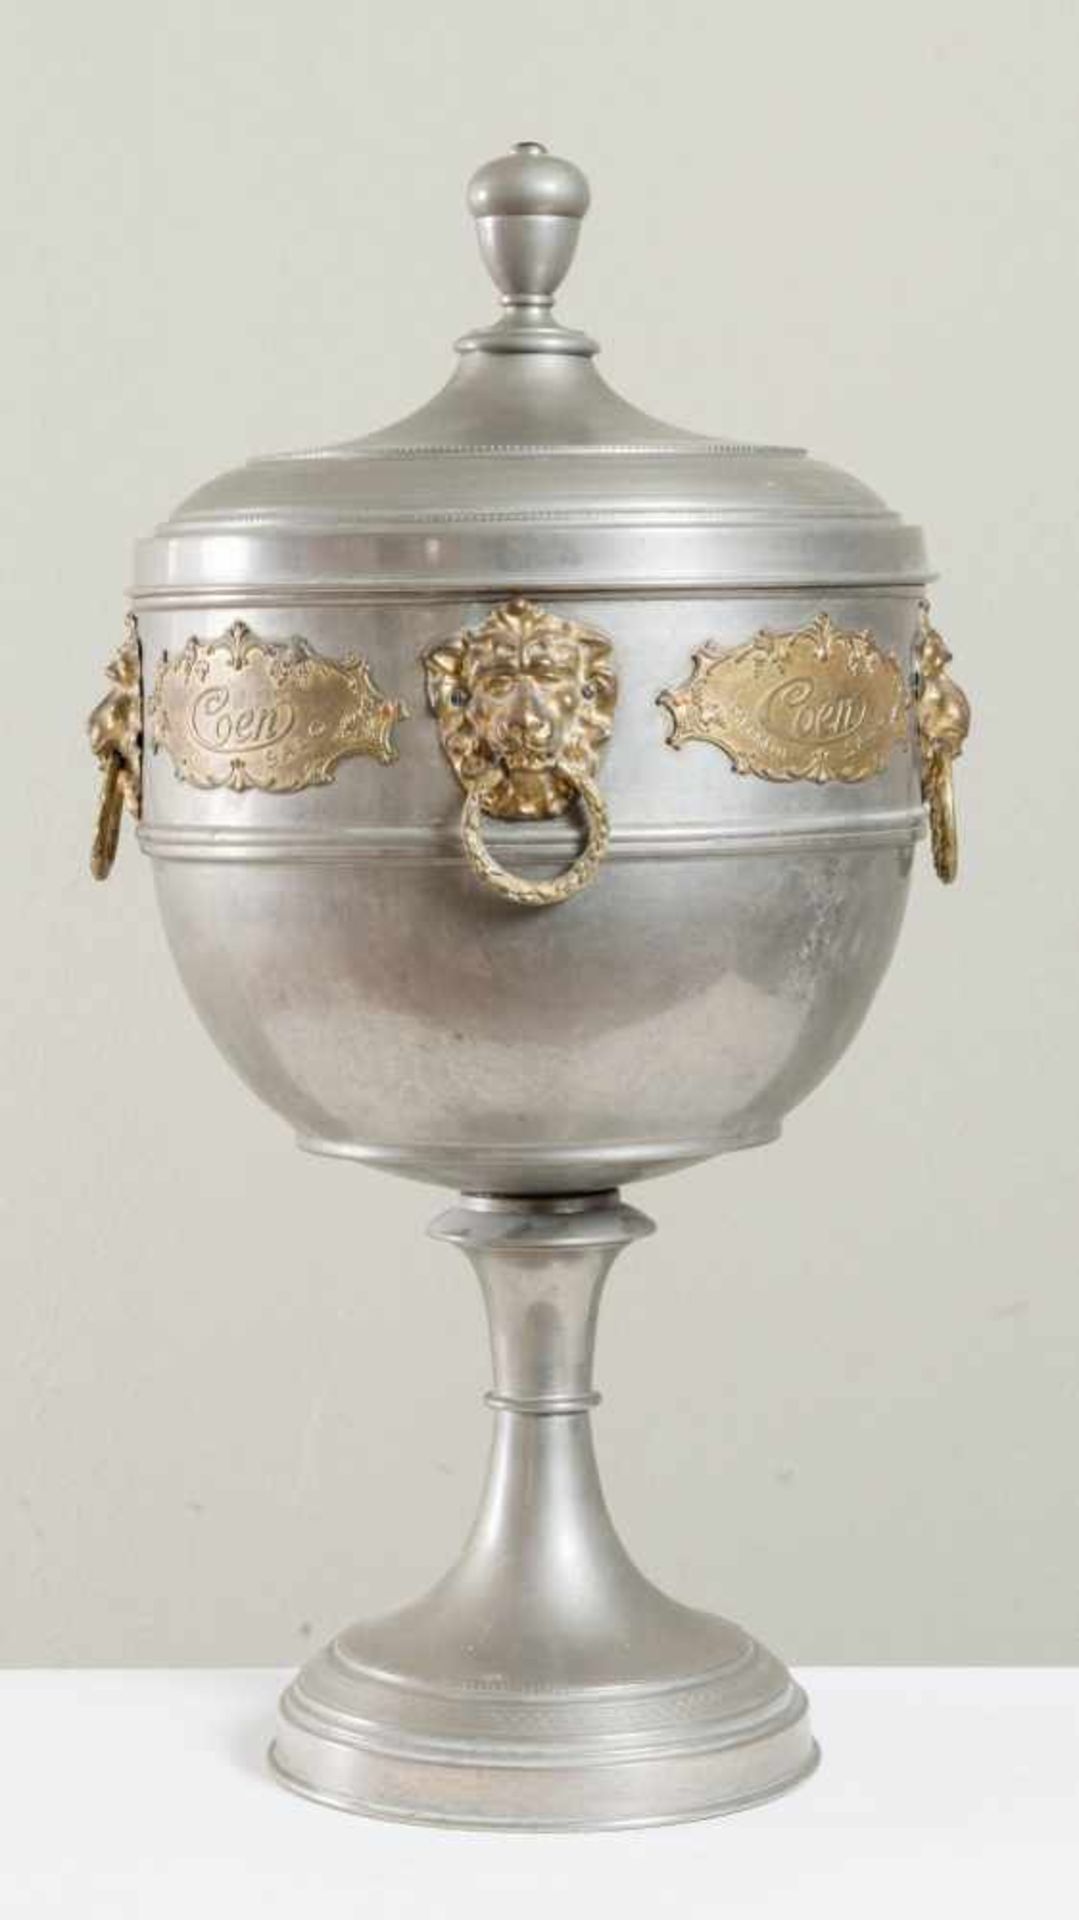 PORTACARAMELLE COEN, XX secolo. A forma di coppa, realizzato in metallo, presenta manigliette a